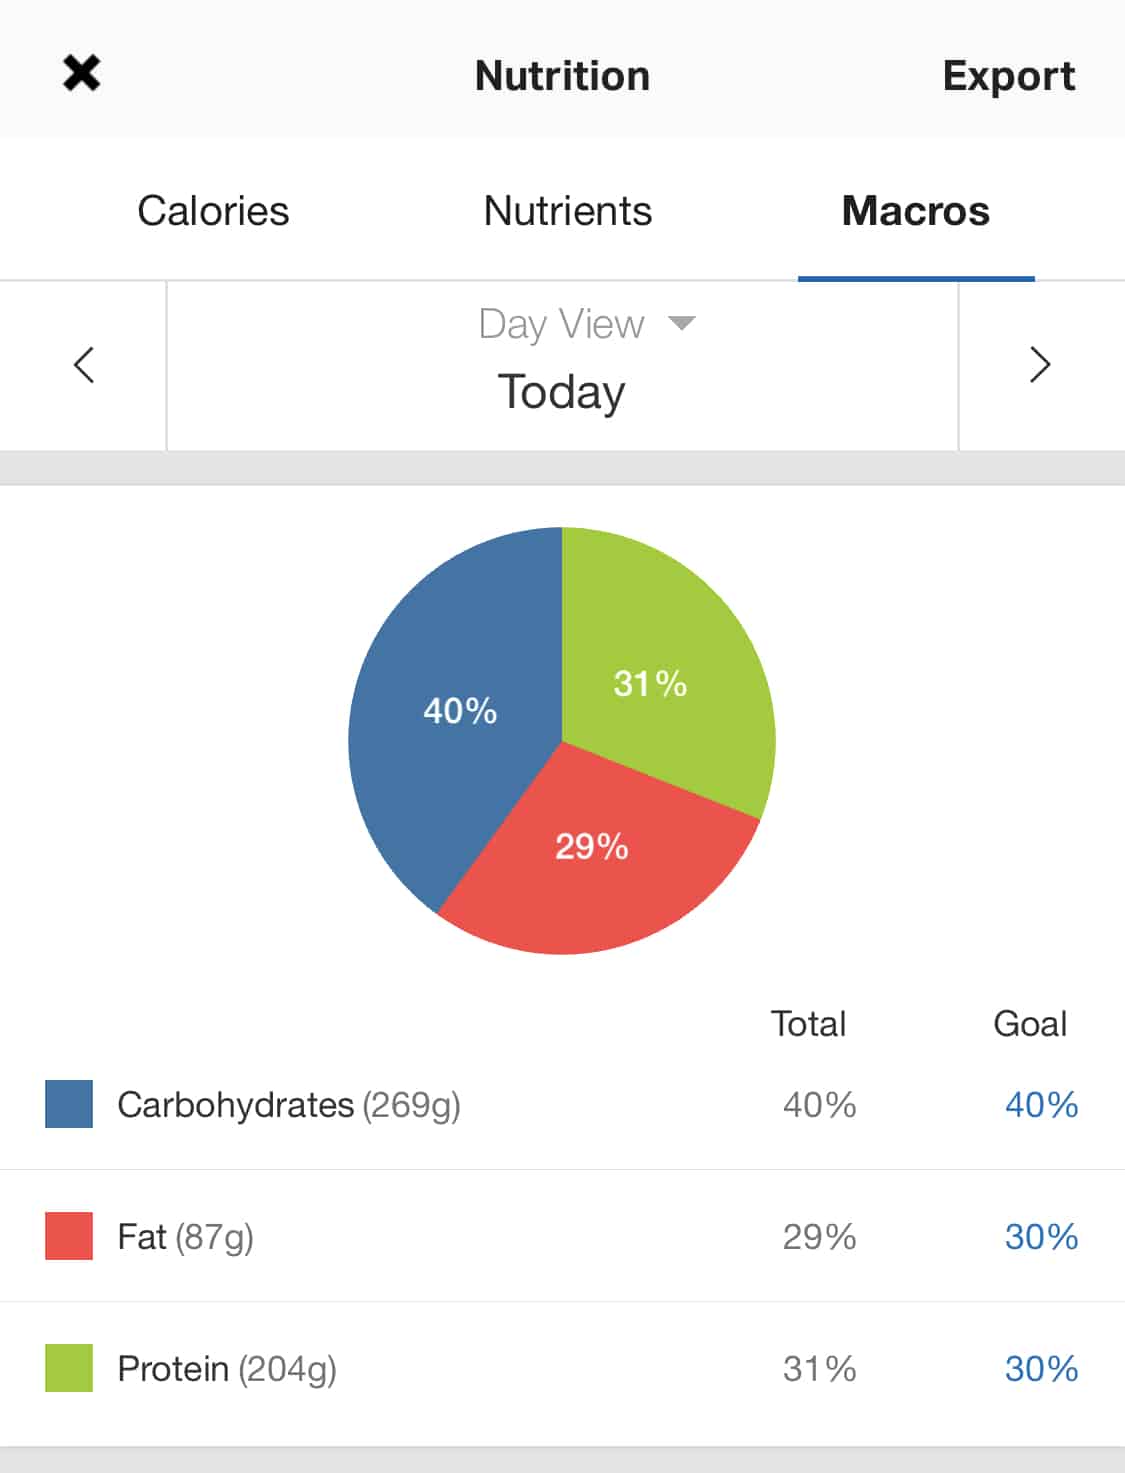 How To Count Macros In 3 Simple Steps Nutritioneering 